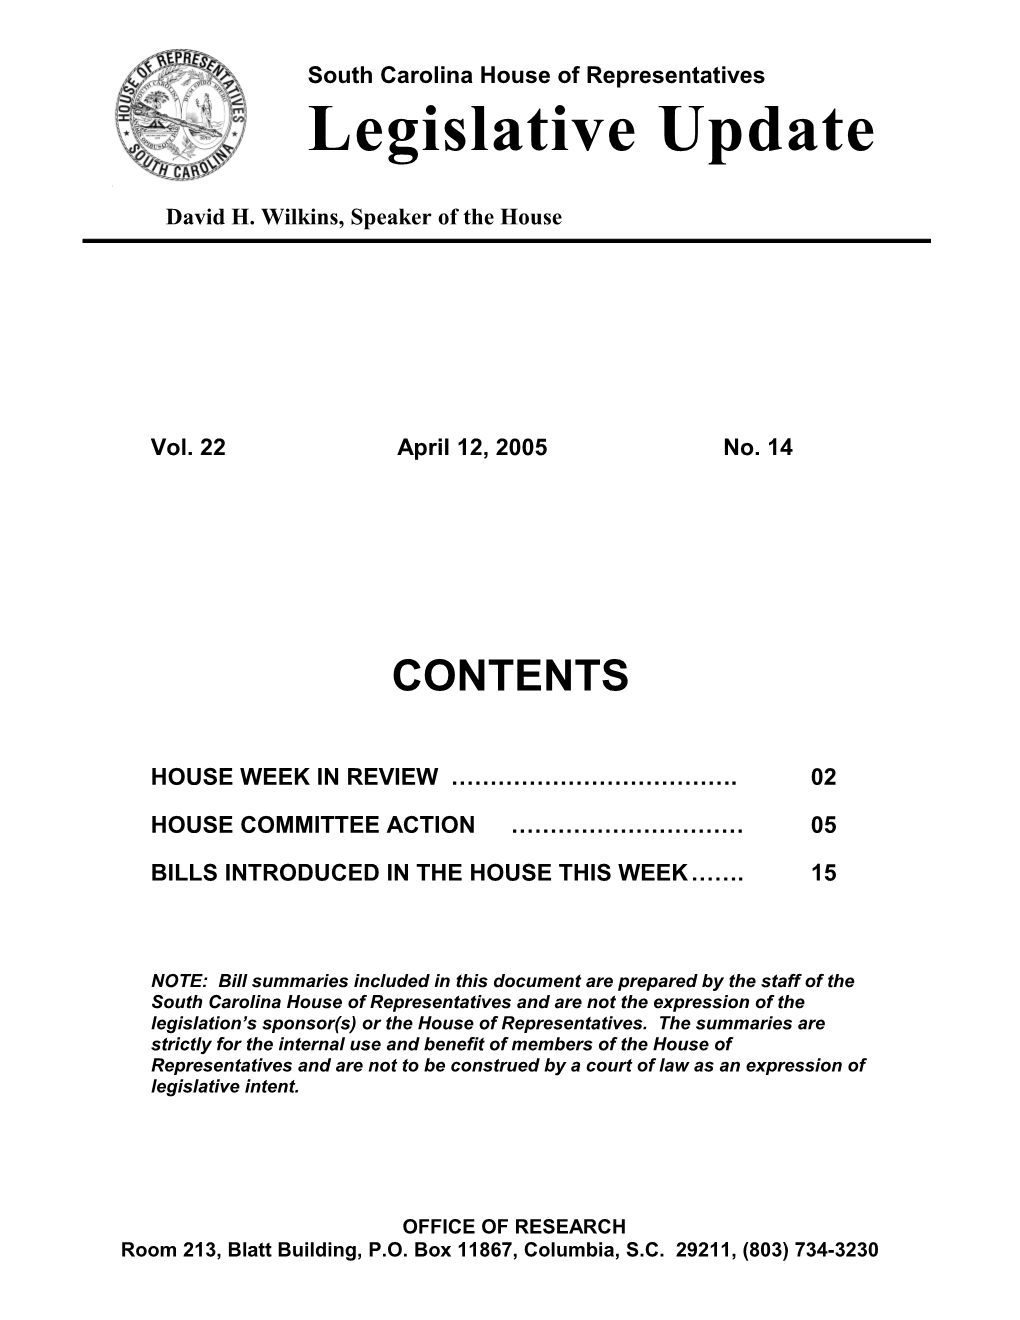 Legislative Update - Vol. 22 No. 14 April 12, 2005 - South Carolina Legislature Online